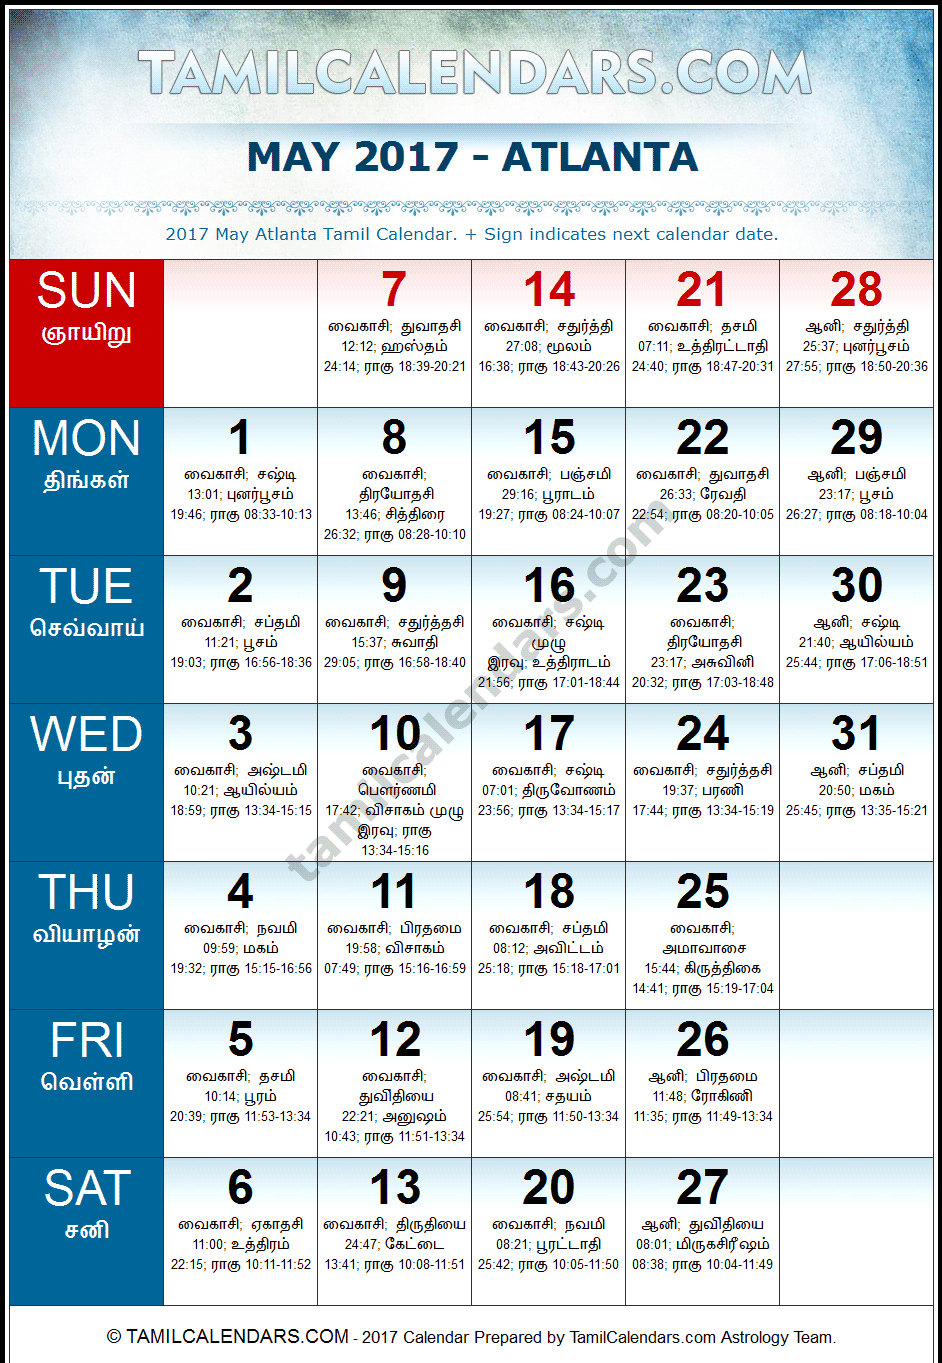 May 2017 Tamil Calendar for Atlanta, USA